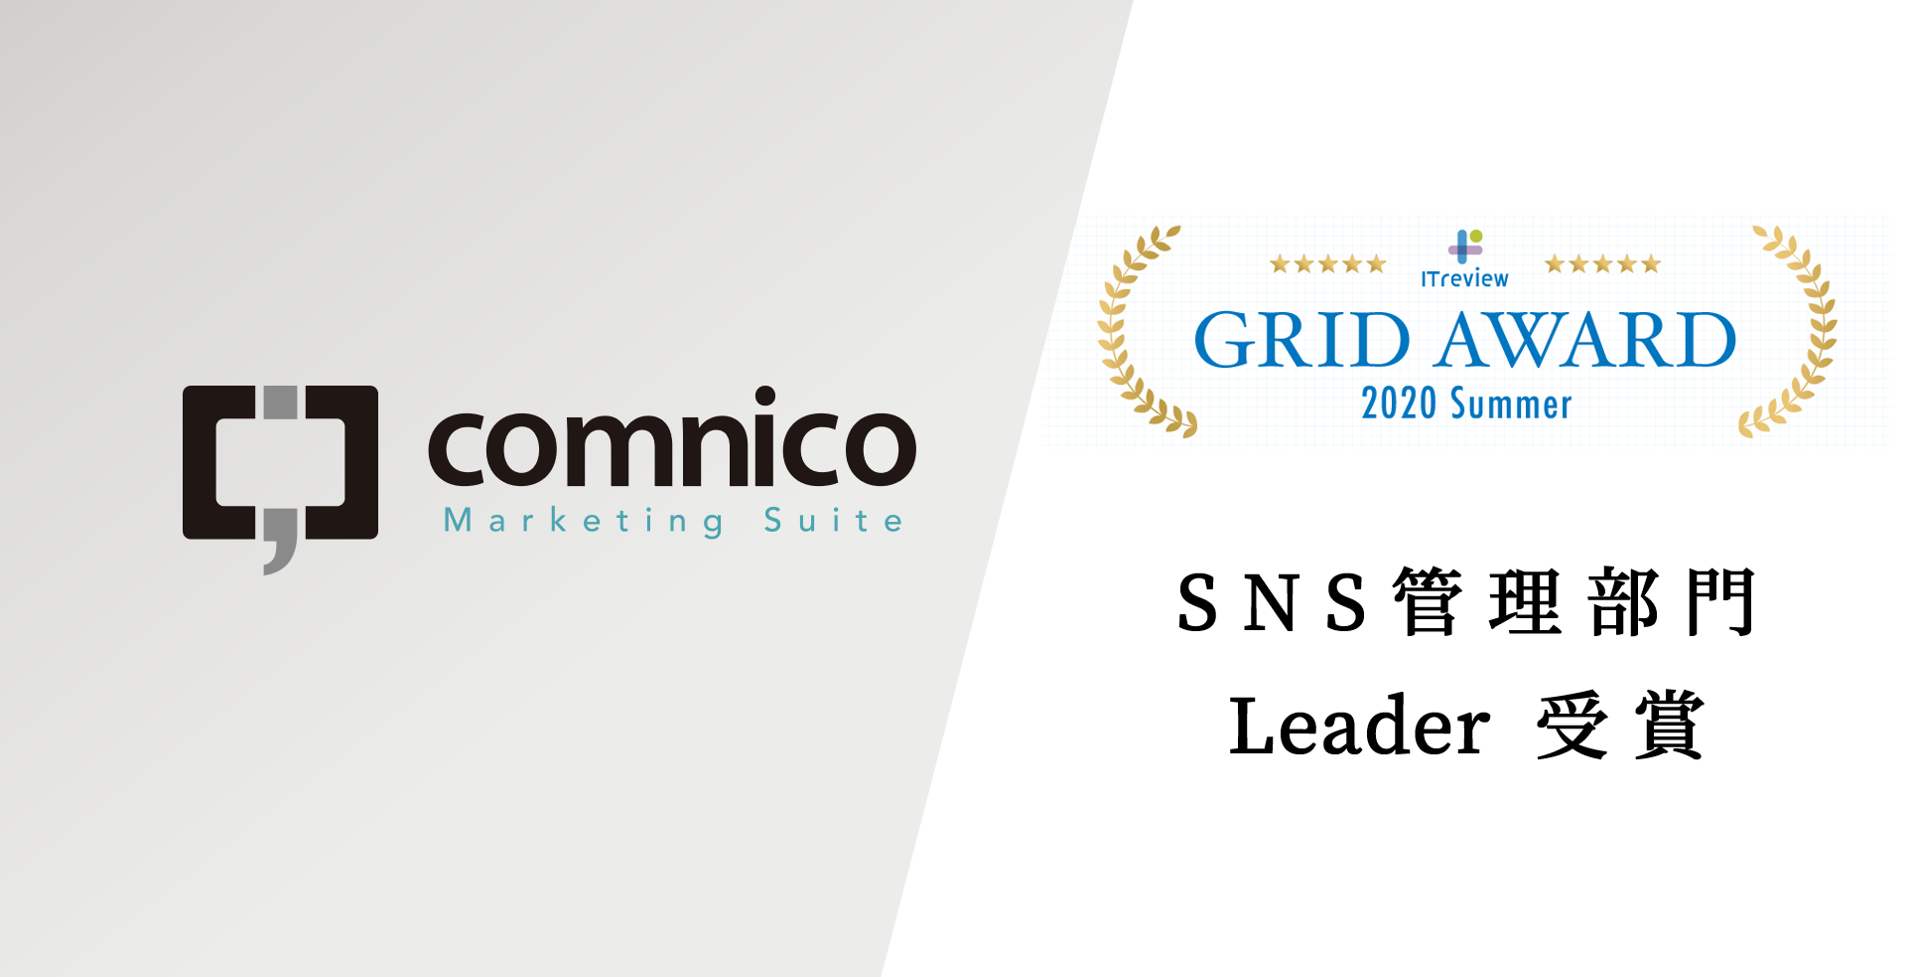 コムニコ マーケティングスイートが、「ITreview Grid Award 2020 Summer」SNS管理部門を受賞